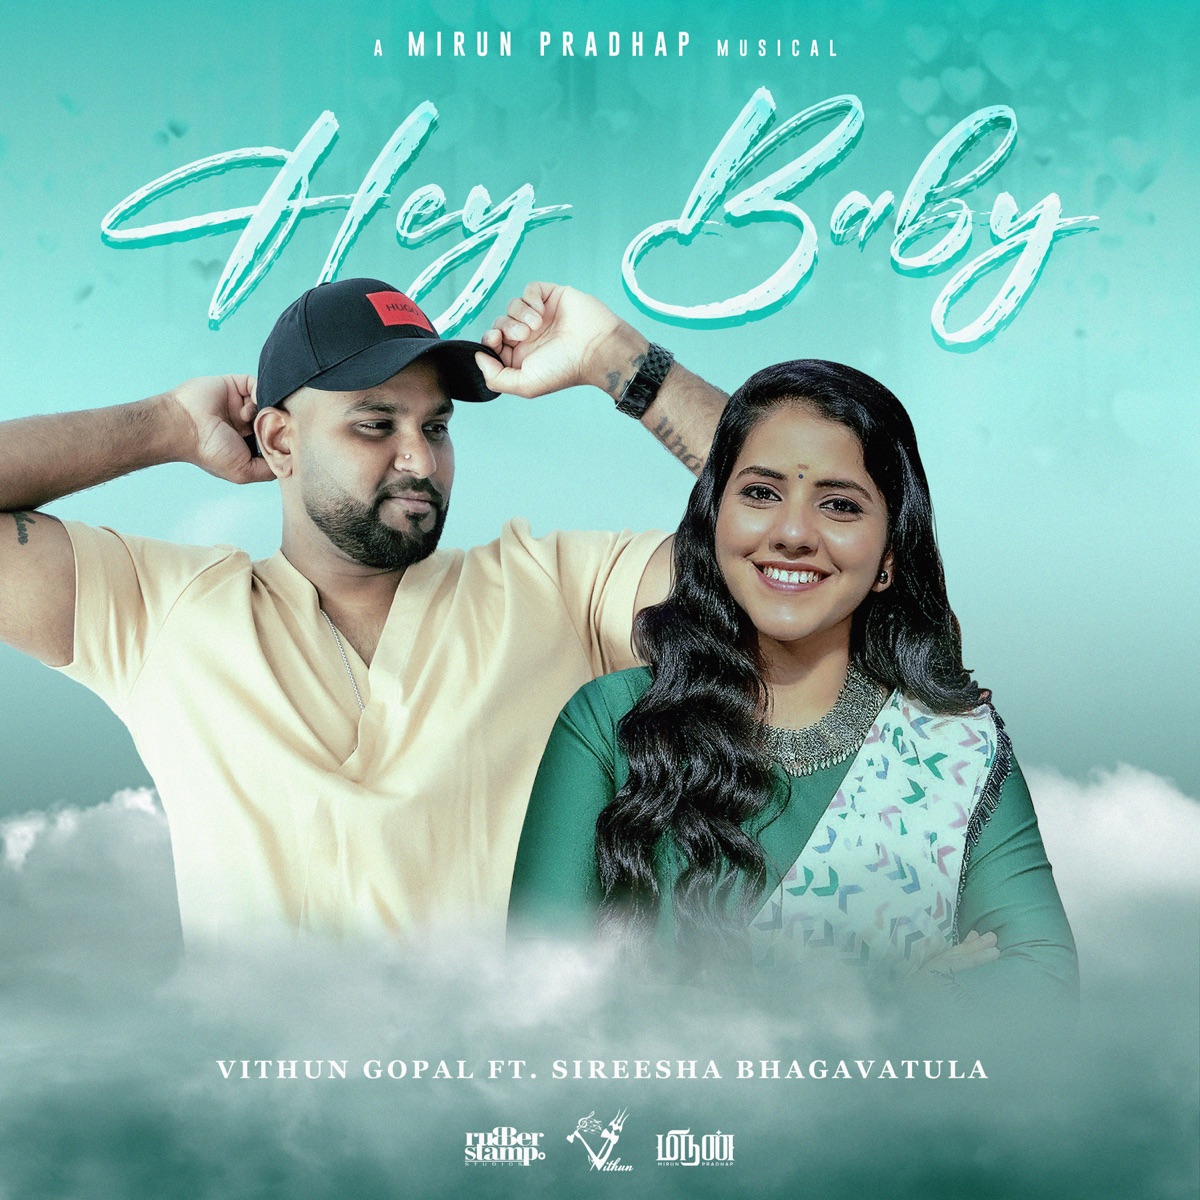 Hey Baby - Single - Album by Vithun Gopal, Sireesha Bhagavatula & Mirun  Pradhap - Apple Music